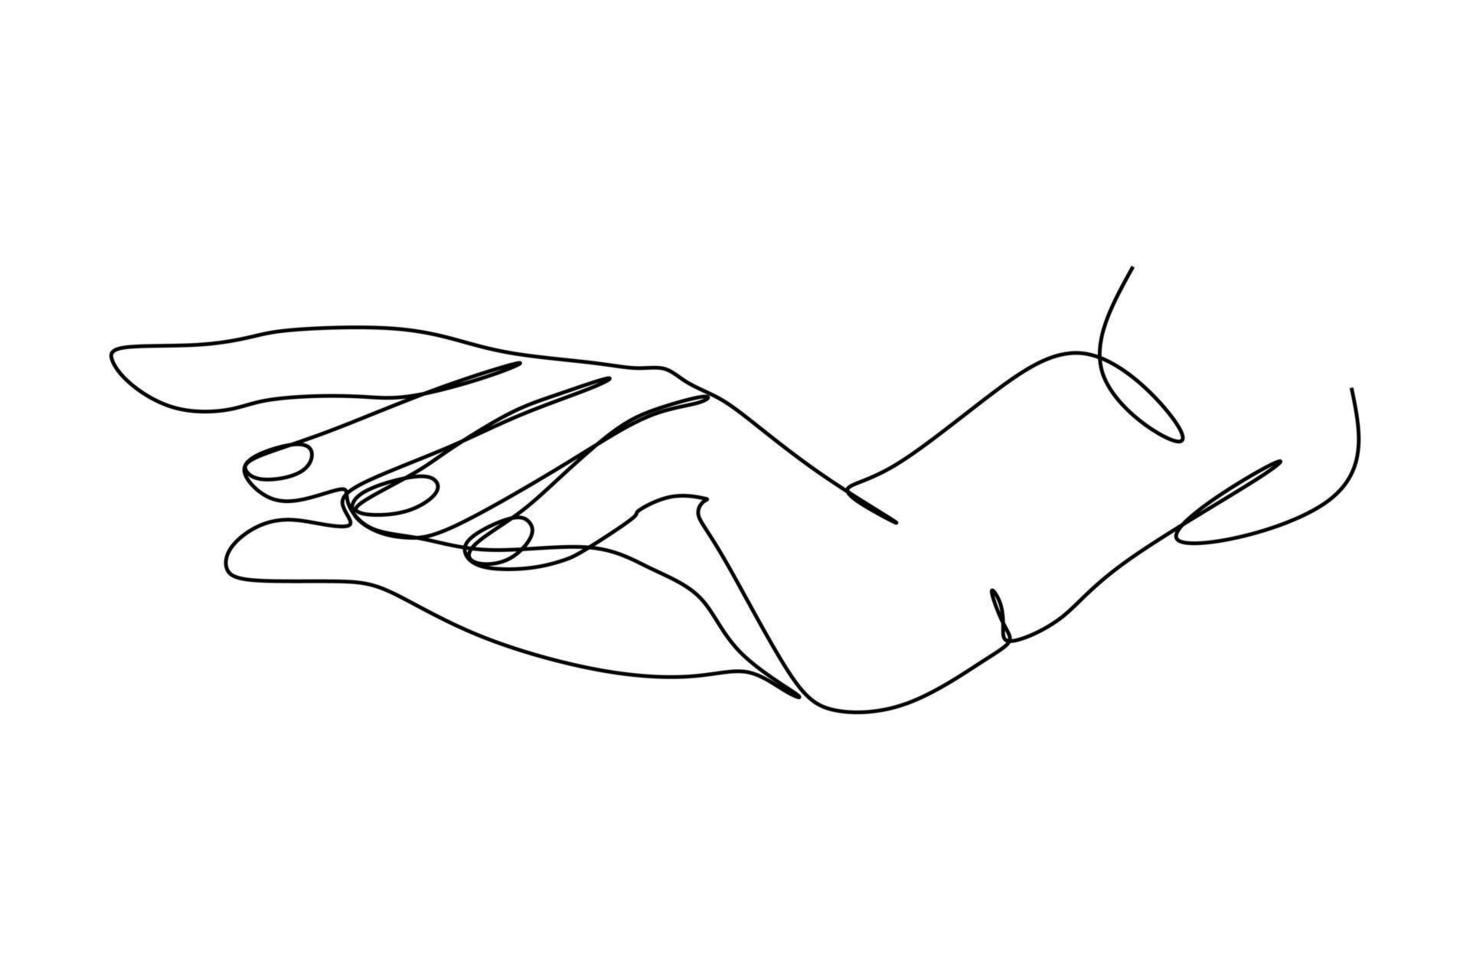 dessin en ligne continu d'illustration minimaliste tendance à la main. concept abstrait d'une ligne. dessin de contour minimaliste des mains. vecteur eps 10